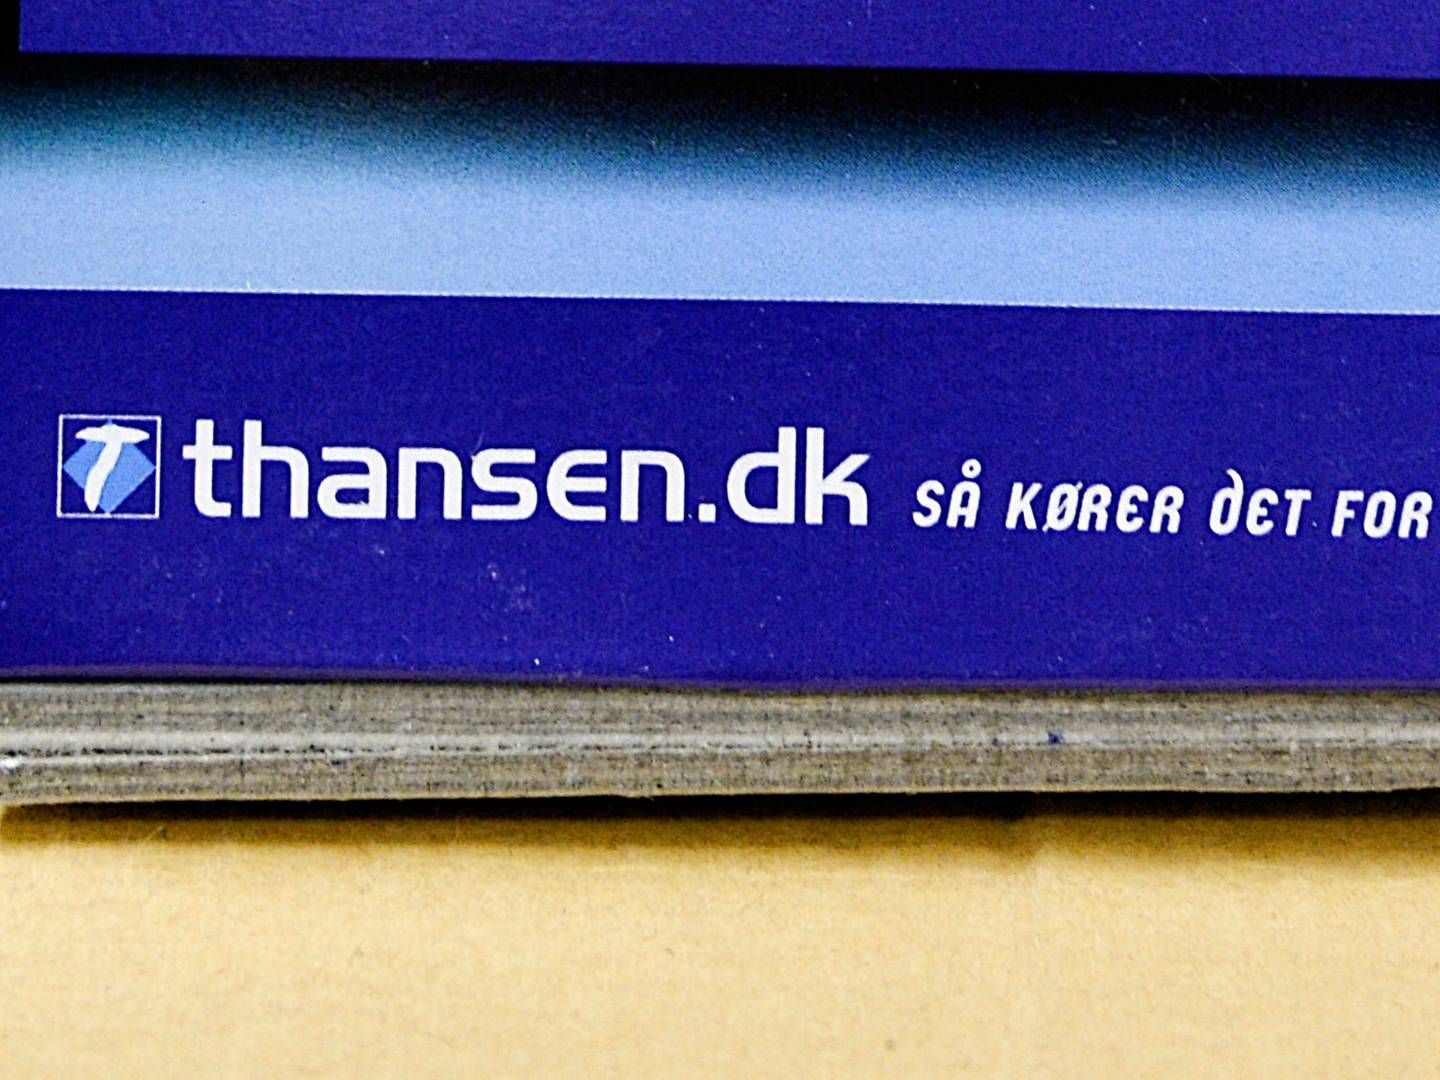 T. Hansen blev stiftet i 1991 af Bent Jensen, der fortsat er adm. direktør. | Foto: Norde Ernst Van/Ritzau Scanpix